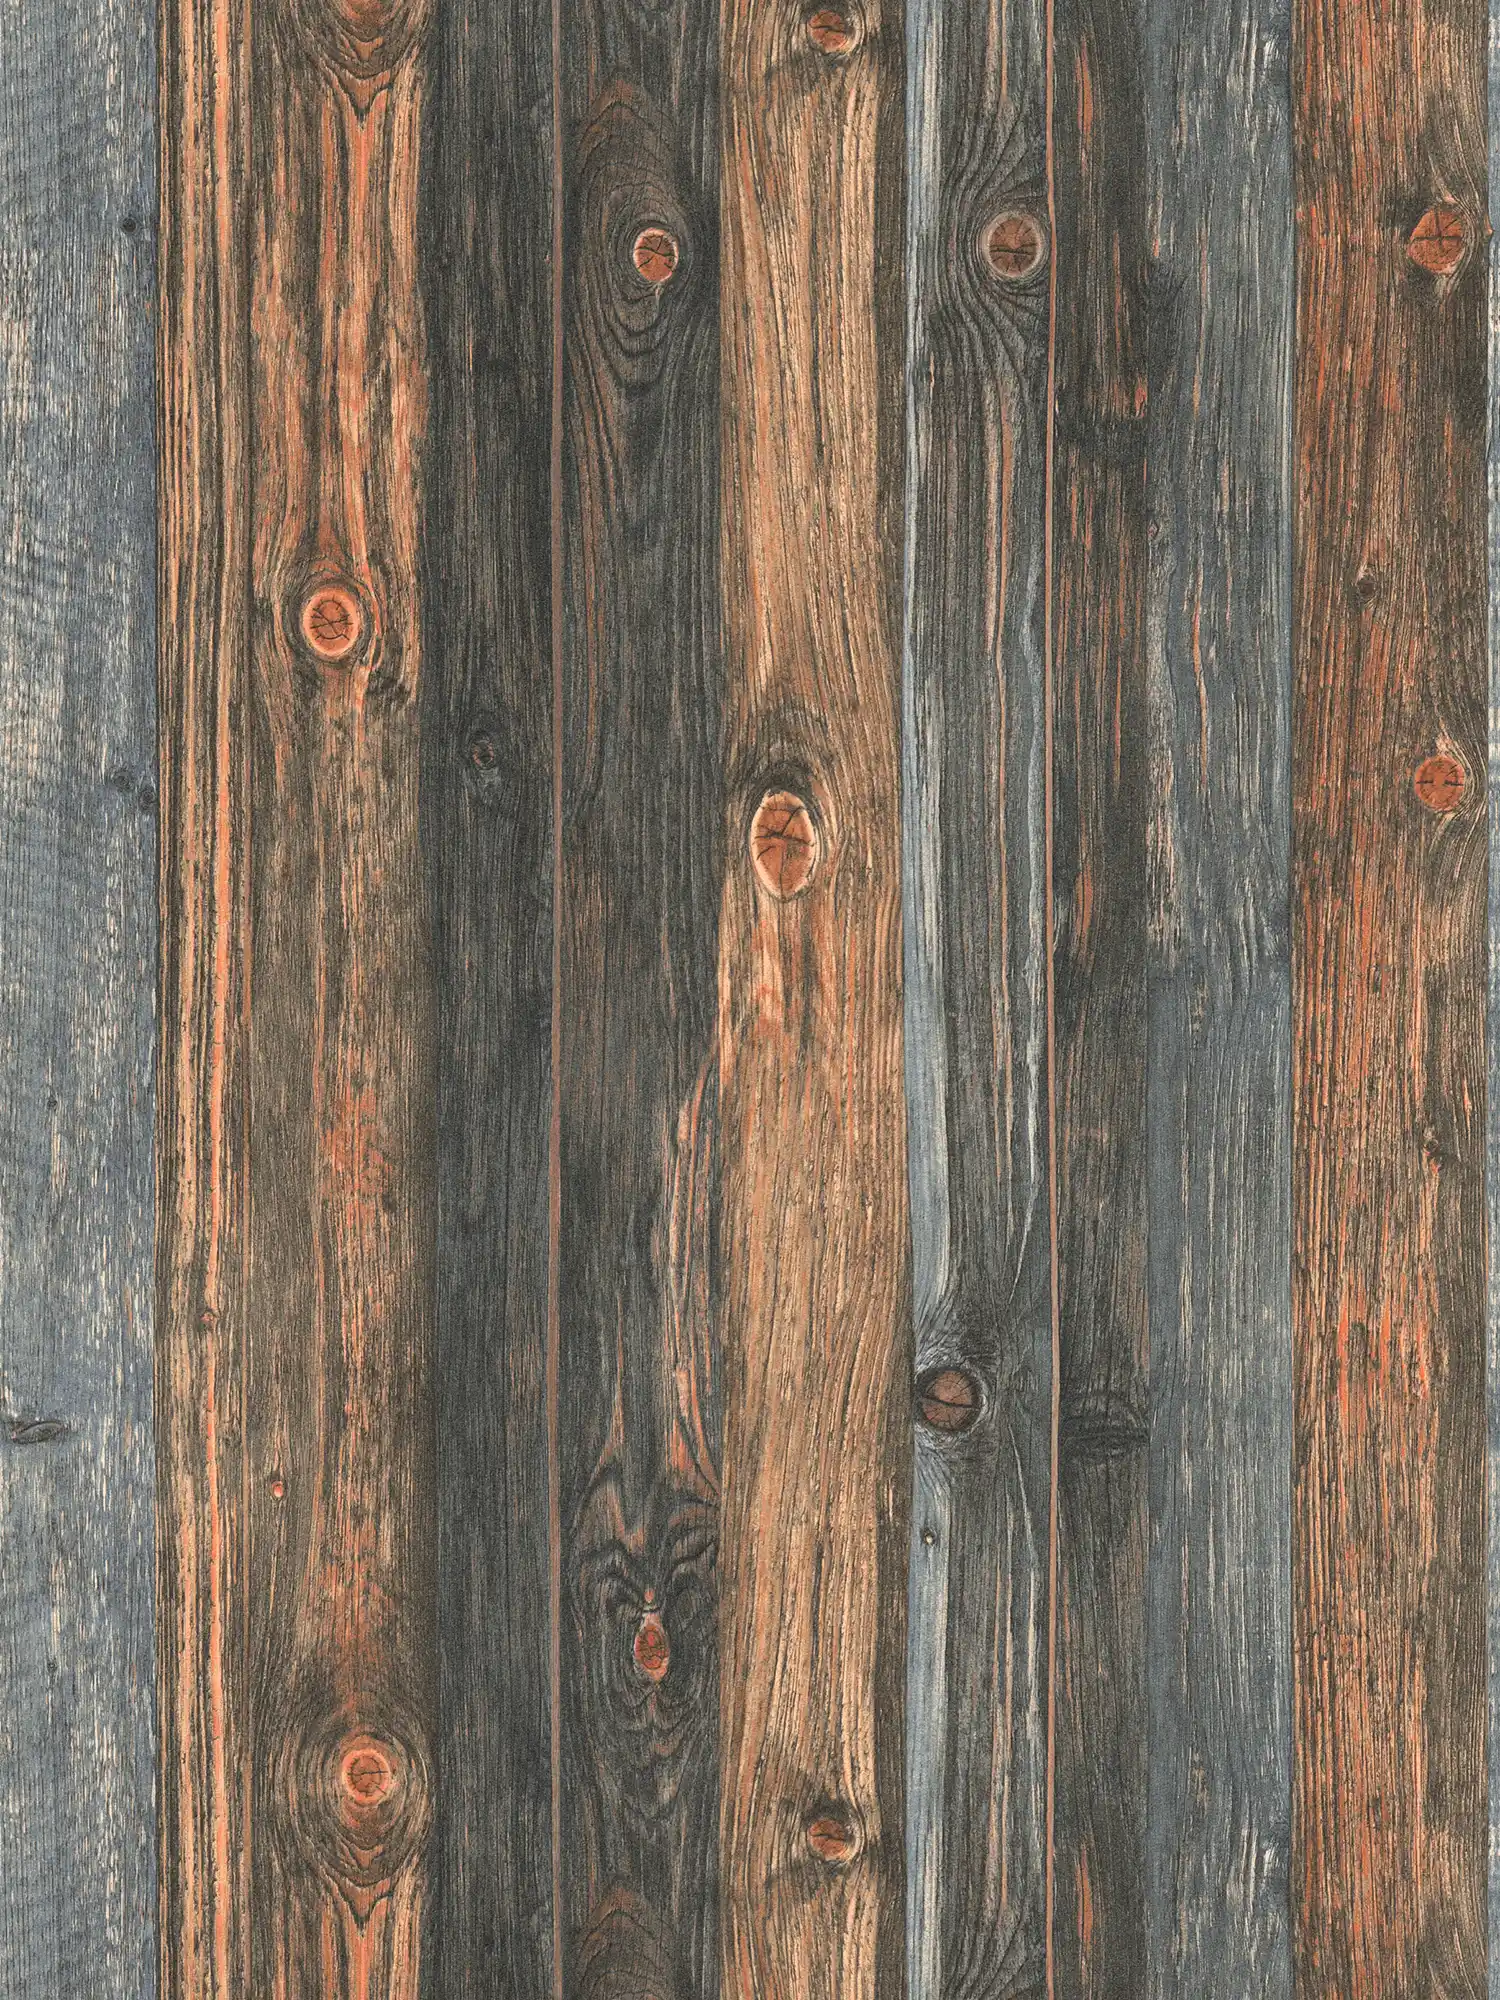 Carta da parati in legno con motivo di tavole, struttura e venature del legno - marrone, grigio, beige
